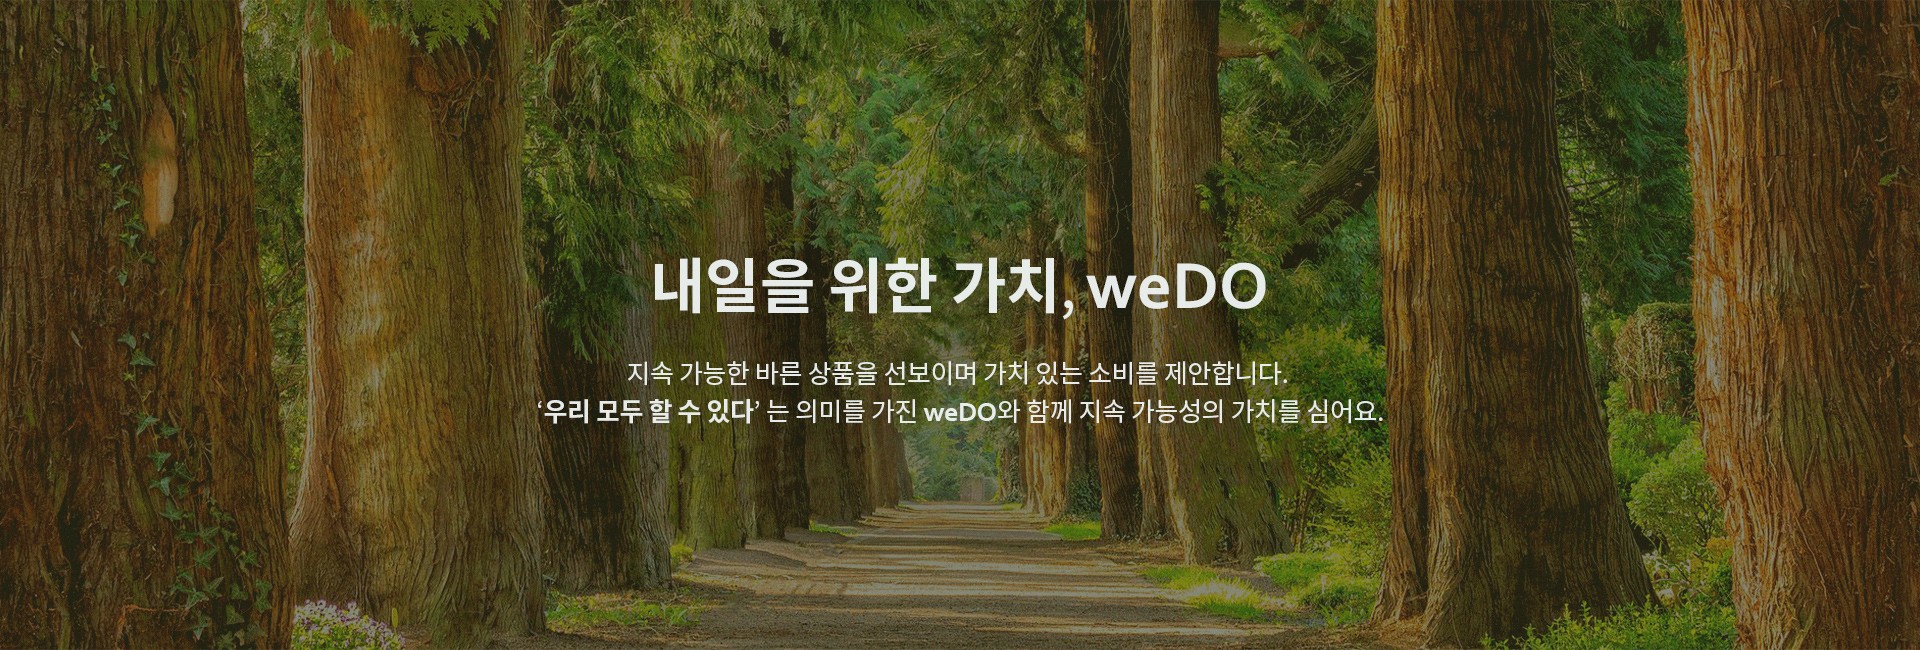 weDO 소개 